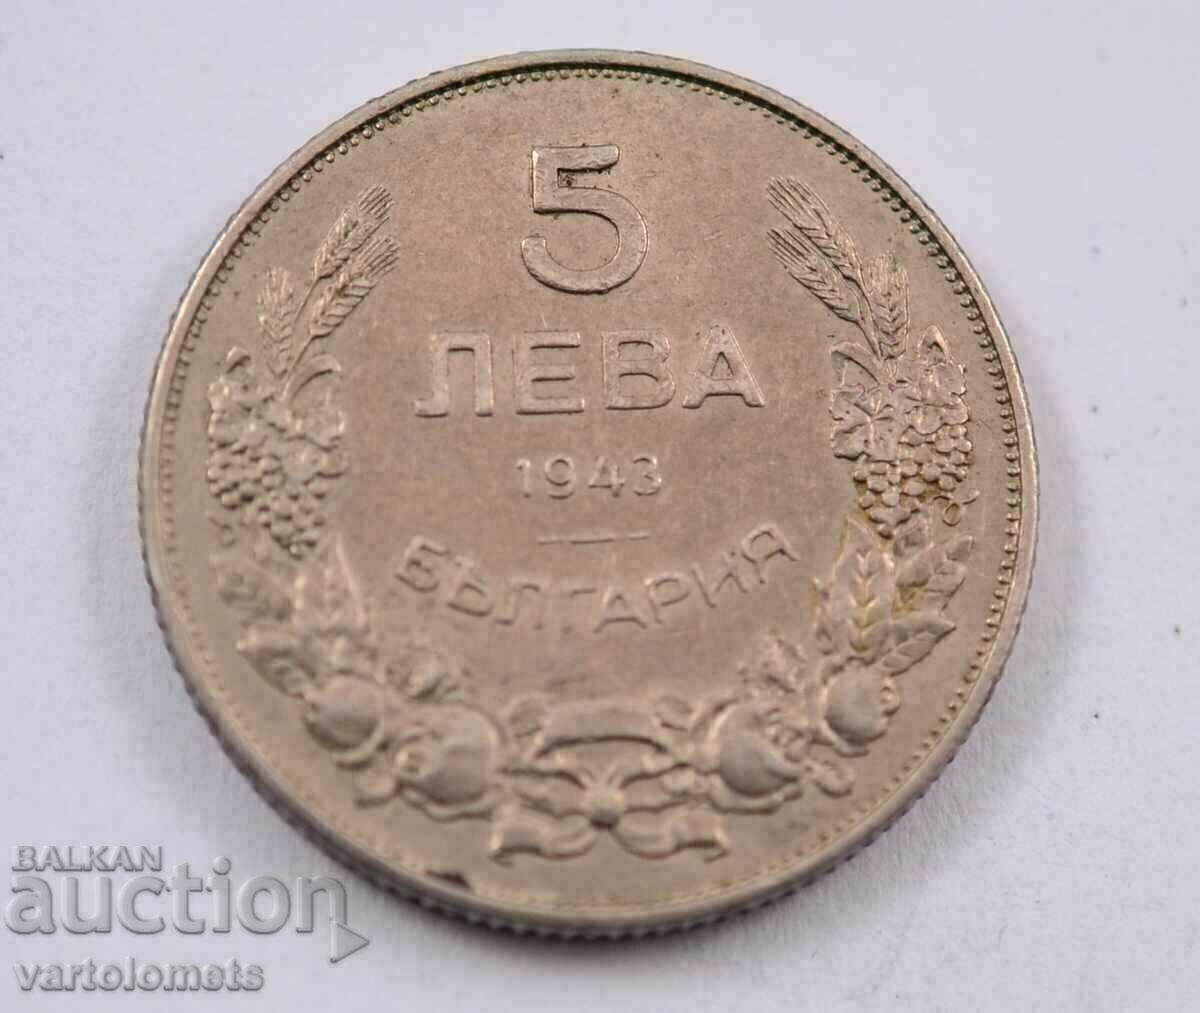 5 BGN 1943 - Bulgaria lucioasă